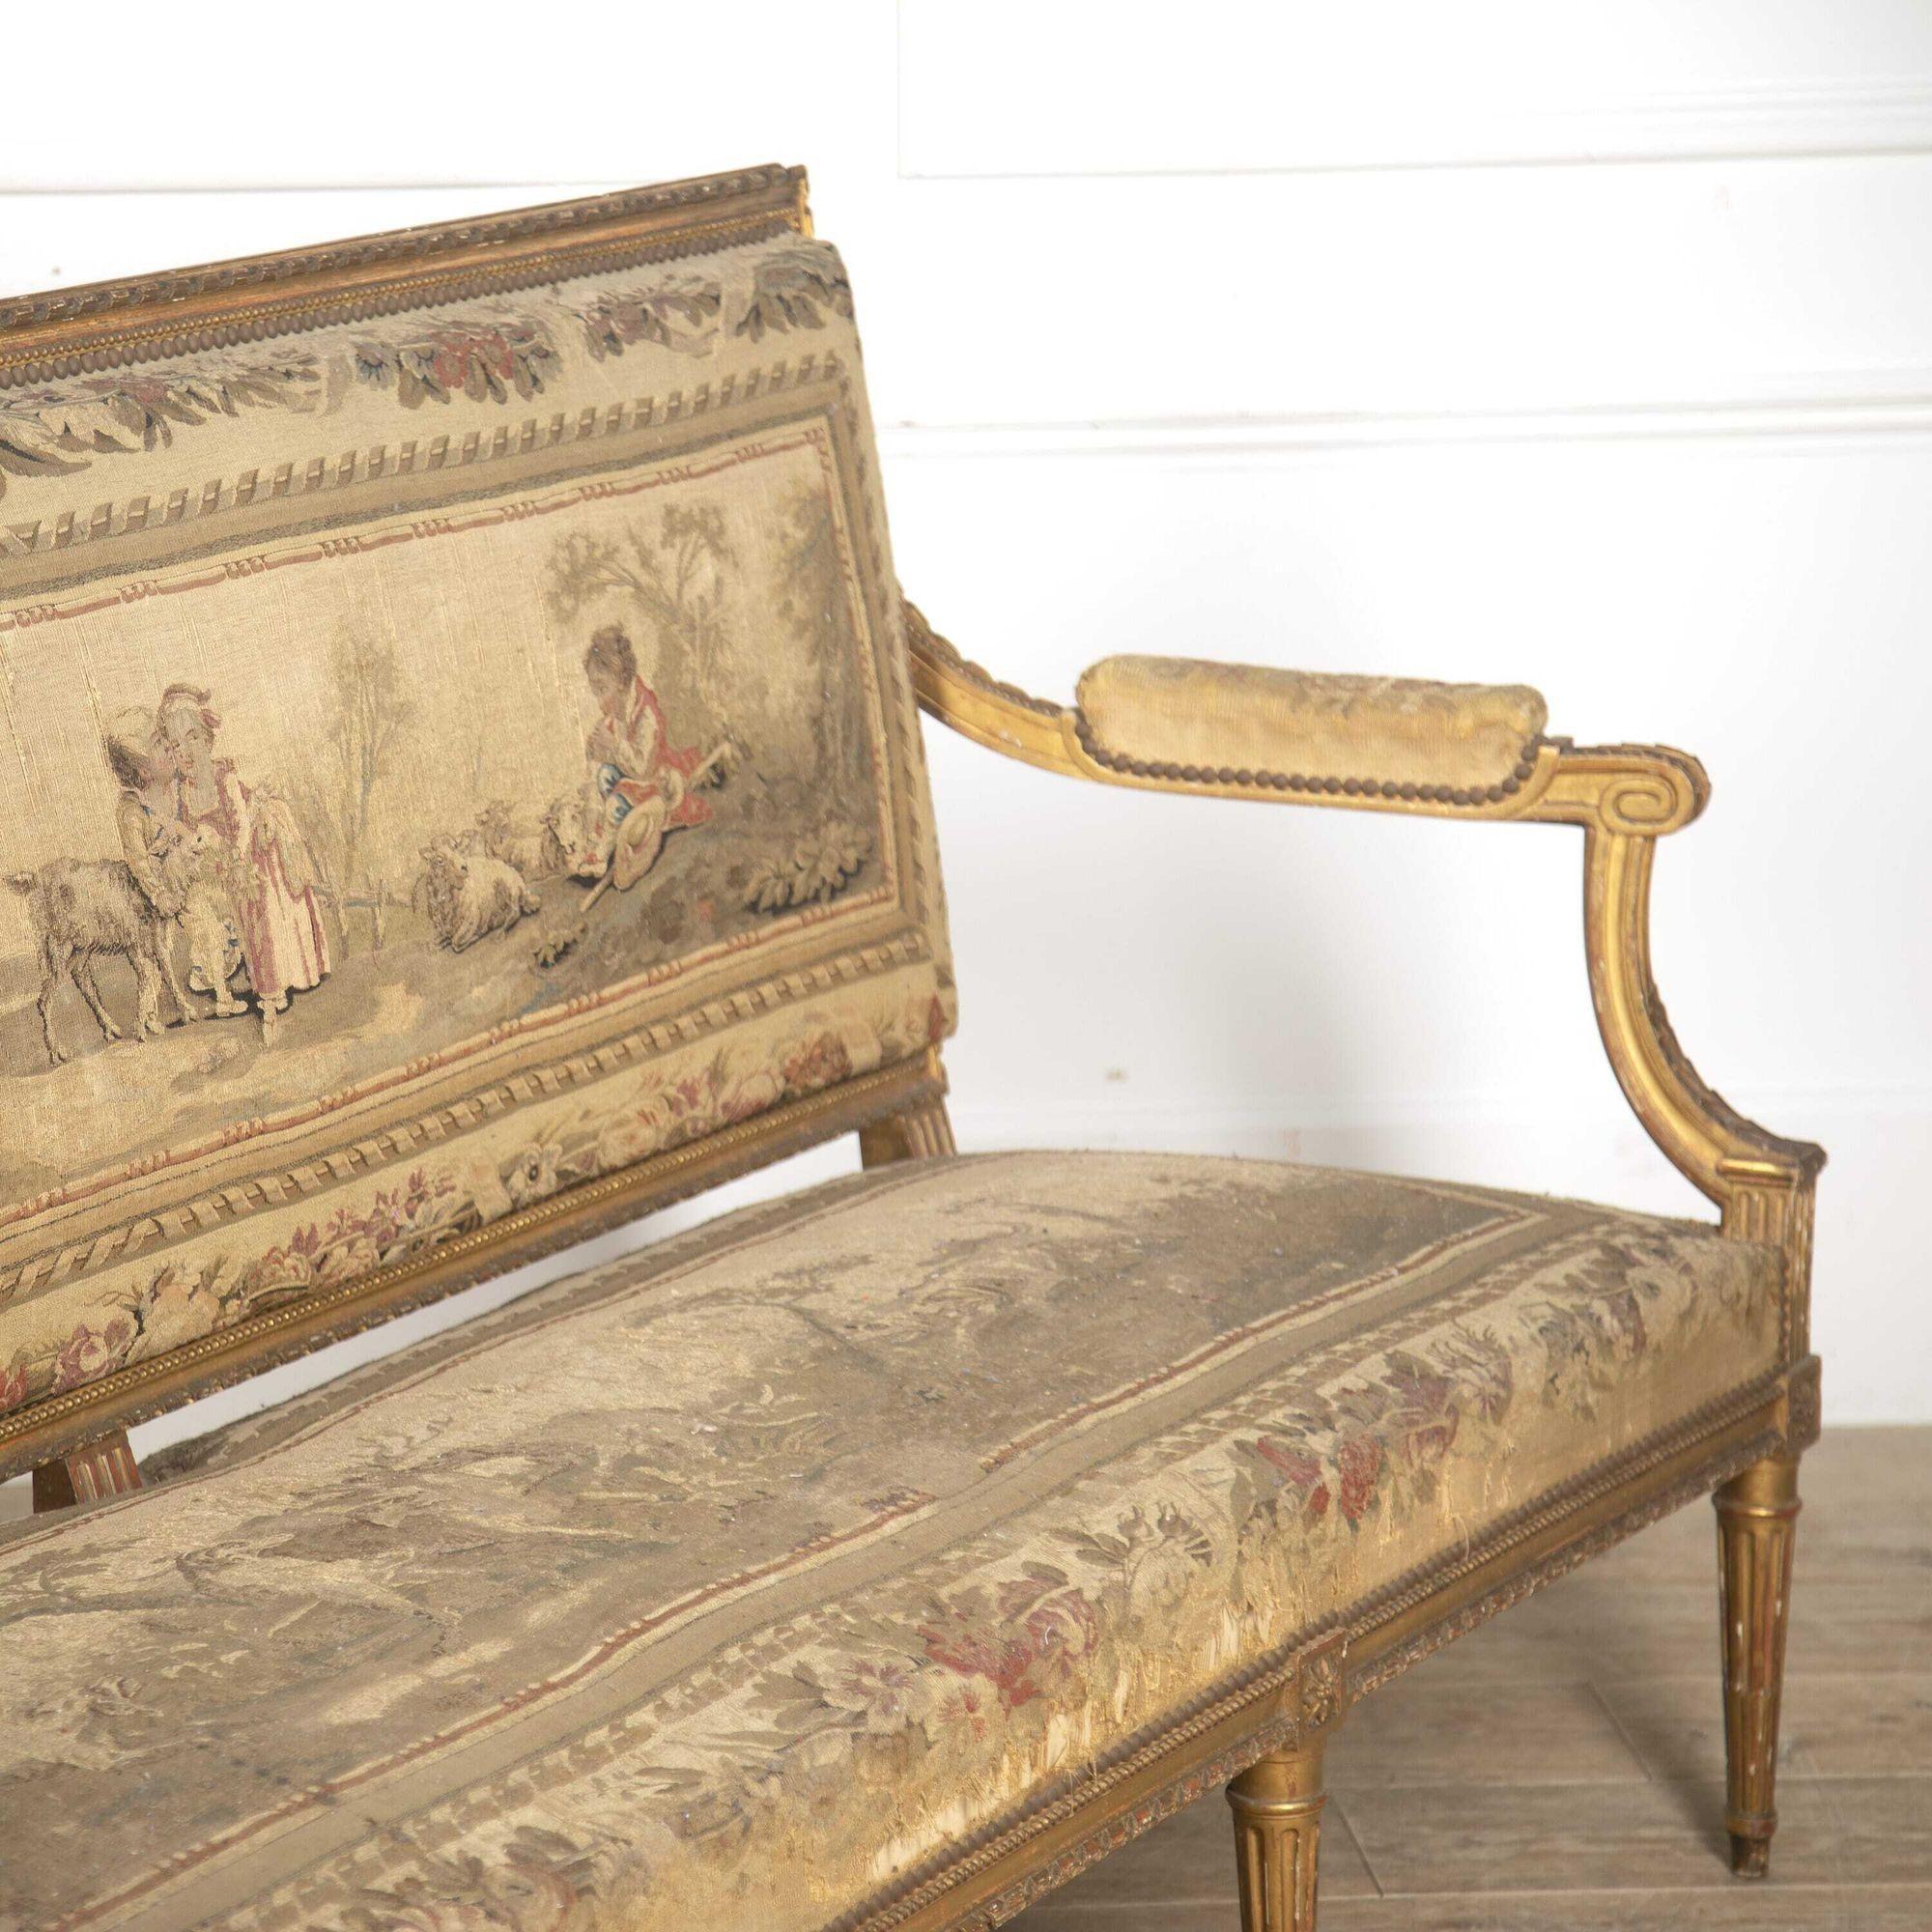 Grand canapé français du XIXe siècle, vers 1880. 
Ce canapé a une forme rectiligne élégante dans le style néoclassique. Le dossier et l'assise droits sont adoucis par des accoudoirs et des montants inclinés vers le bas. 
L'ensemble repose sur huit